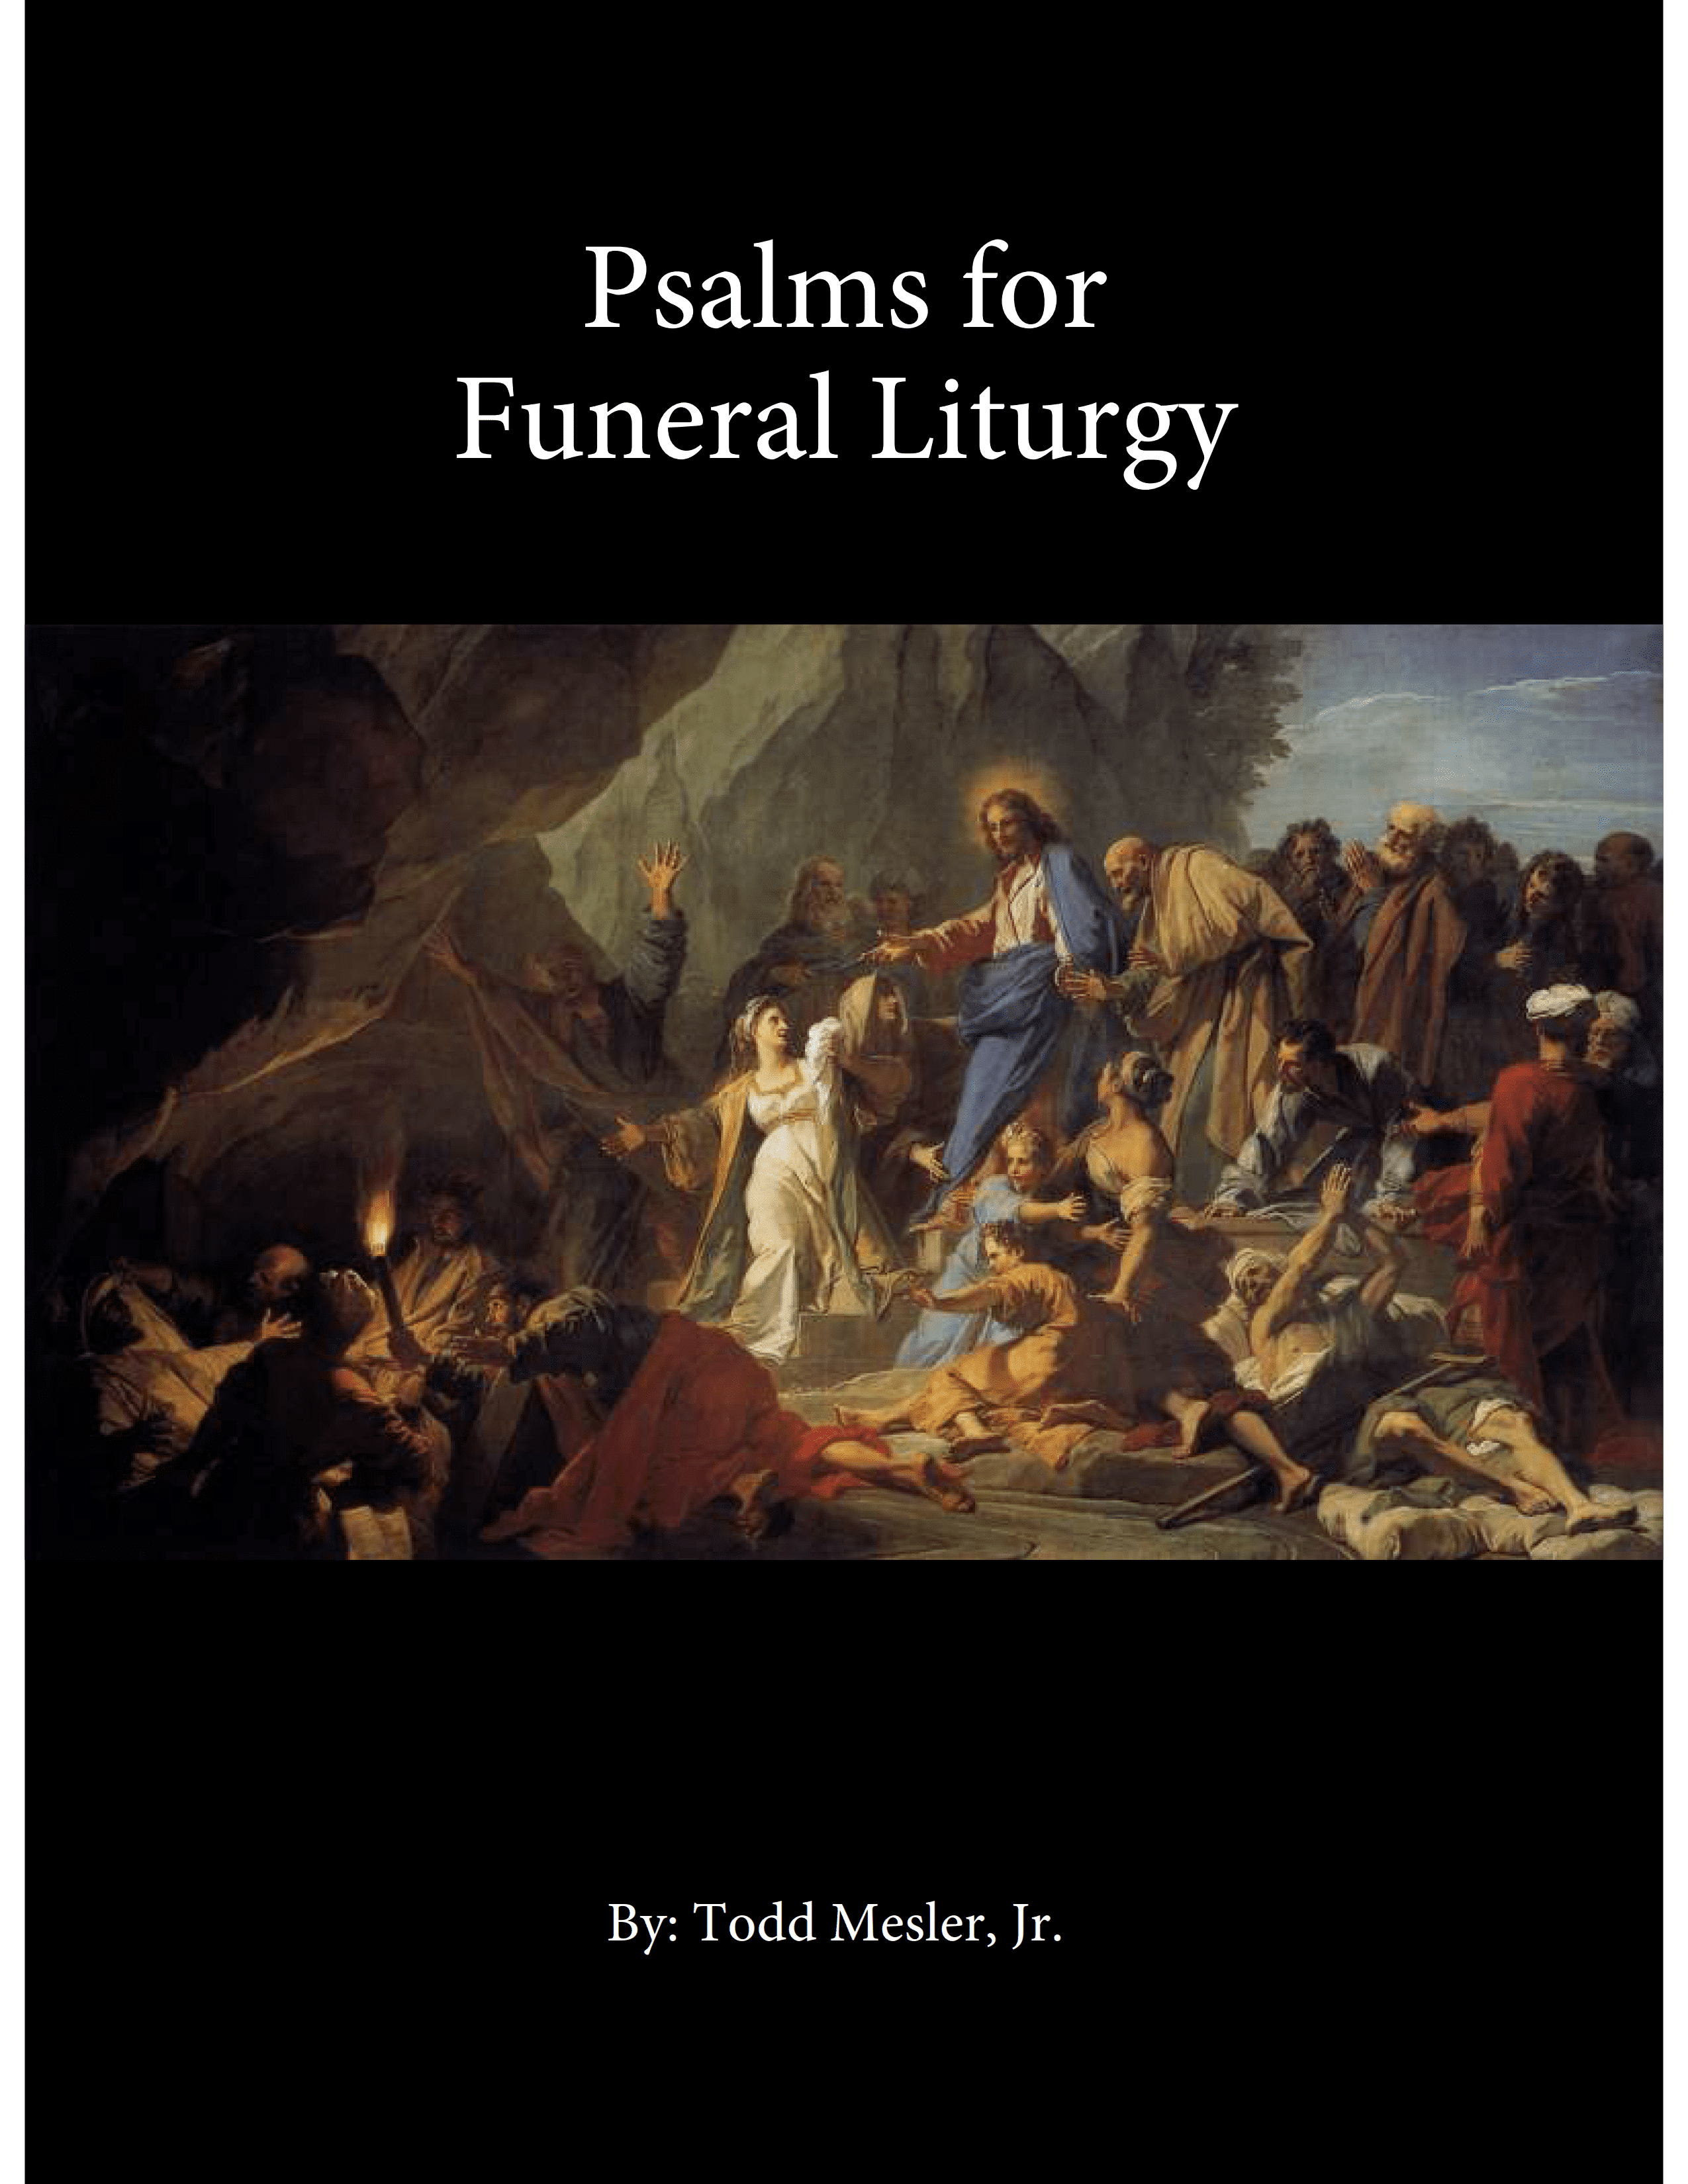 Psalms for Funeral Liturgy (Mesler)